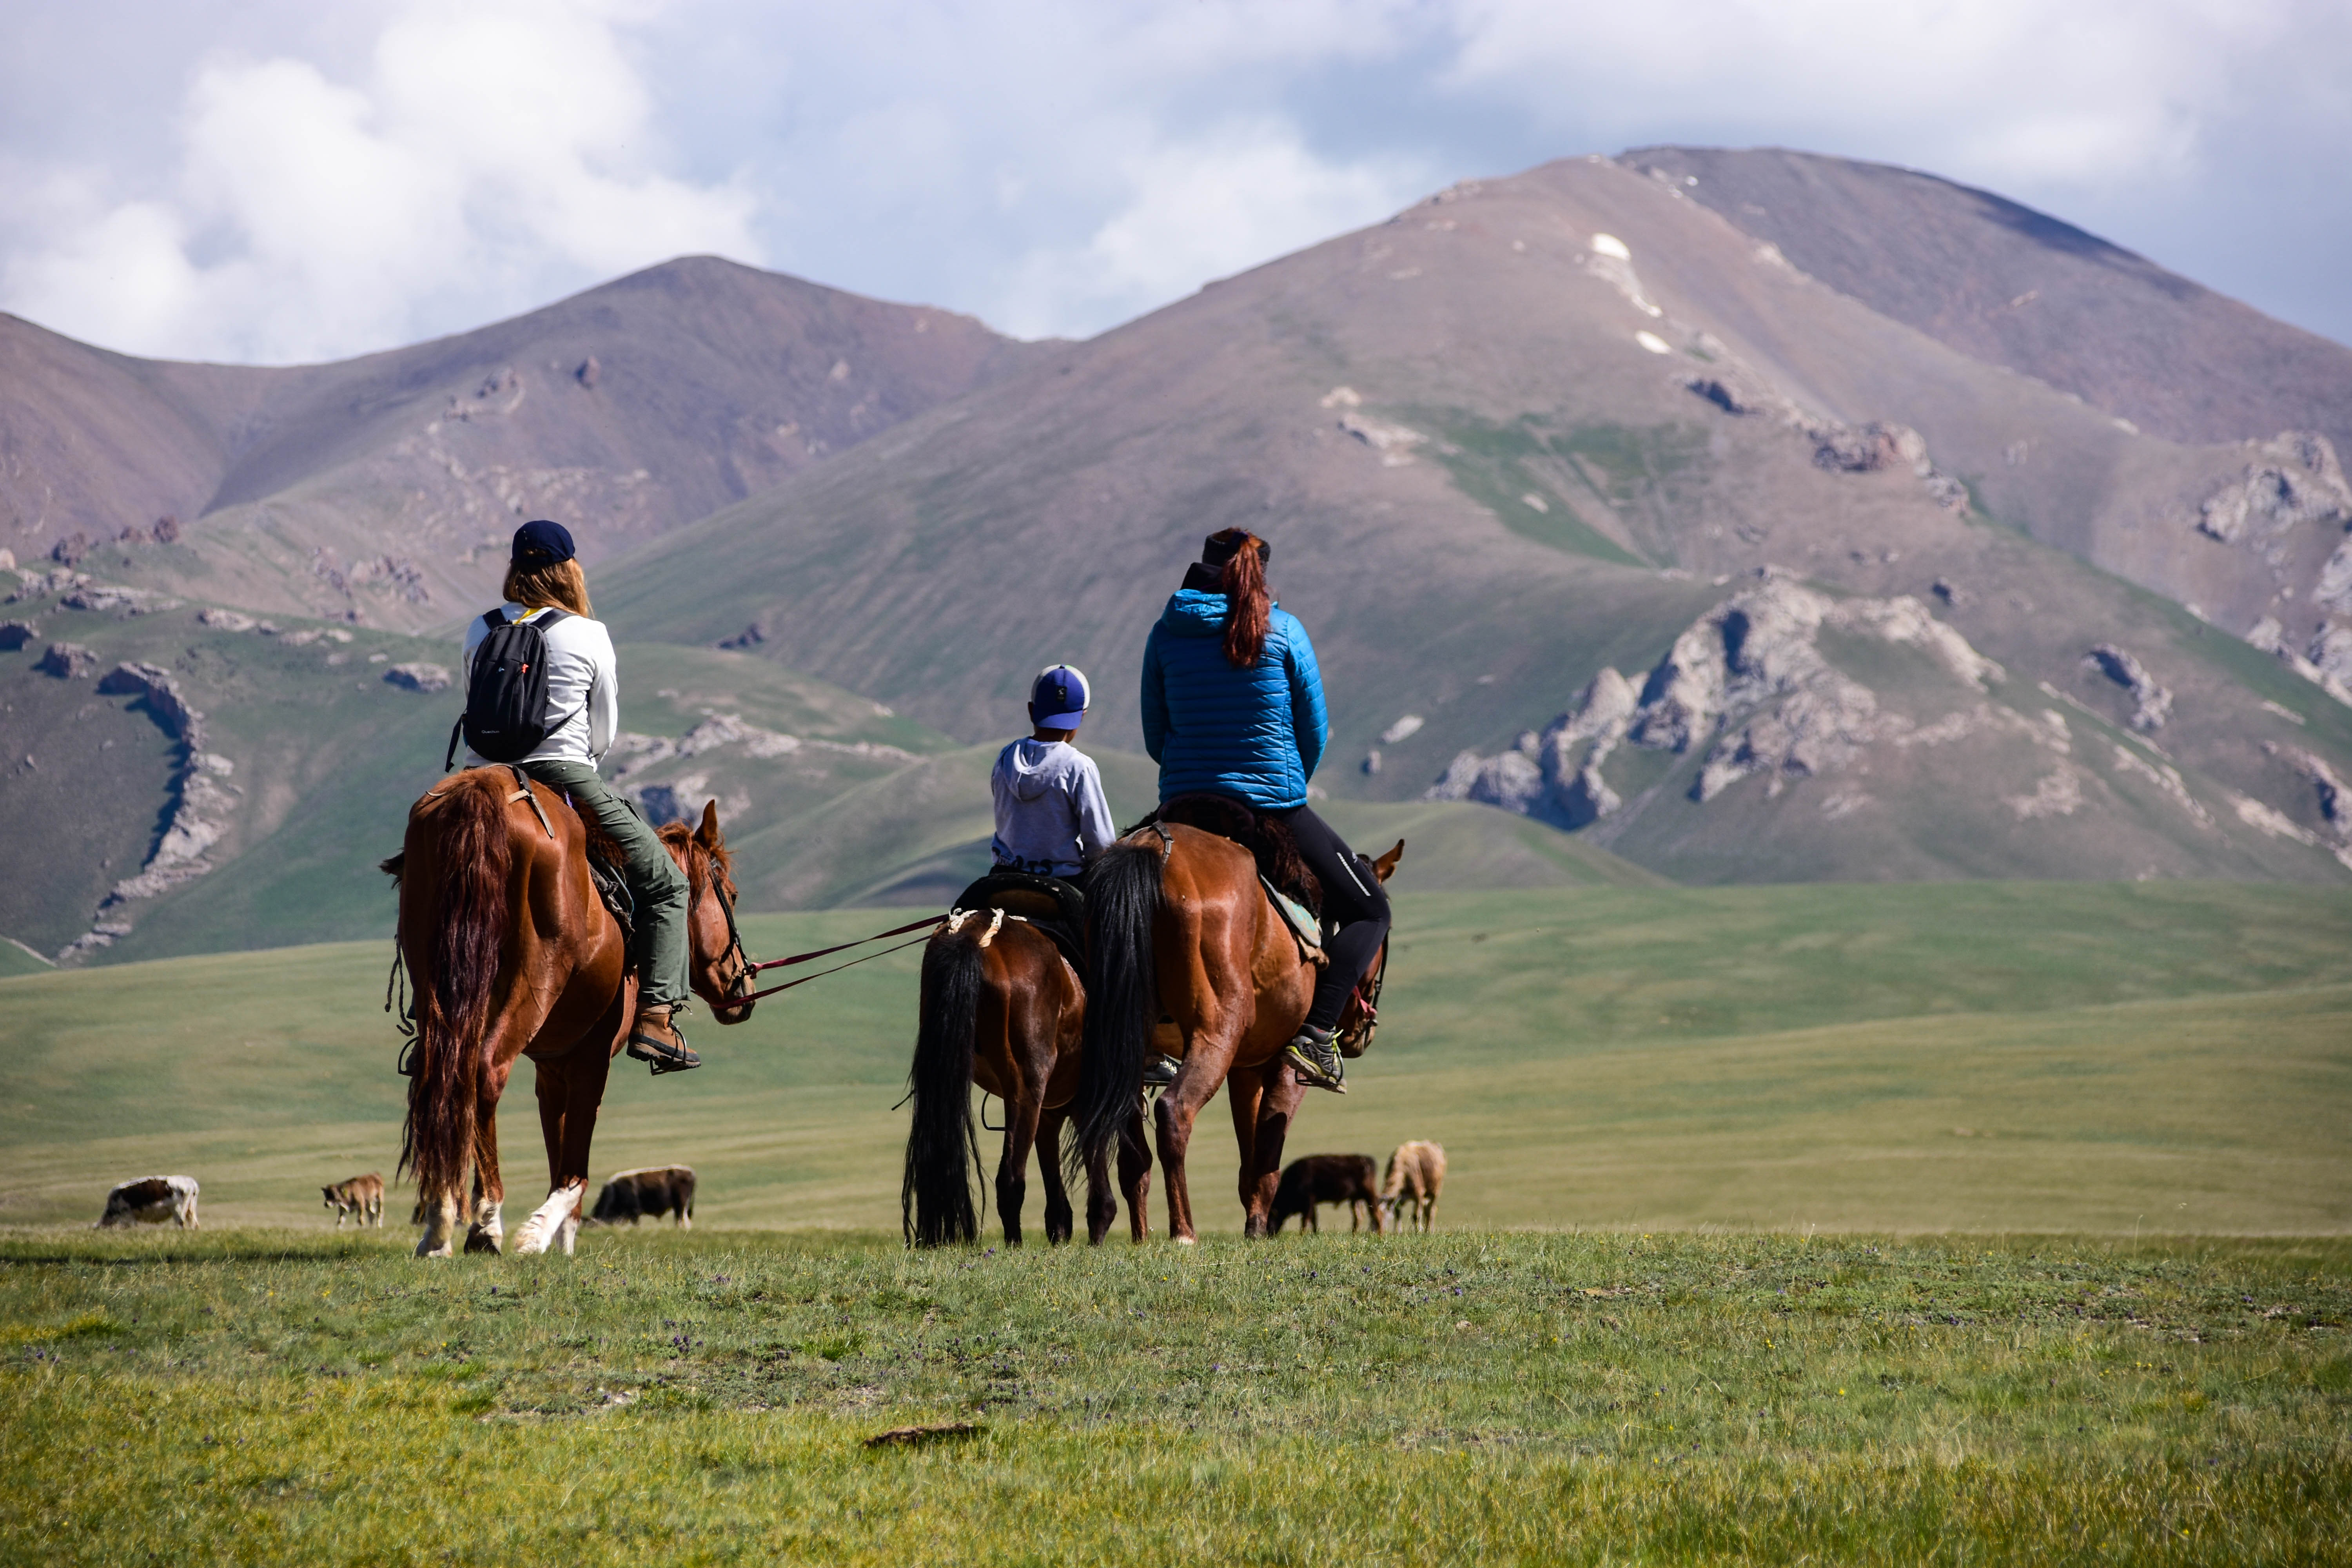 CoverMore_Lisa_Owen_Kyrgyzstan_Song Kul_Horseriding